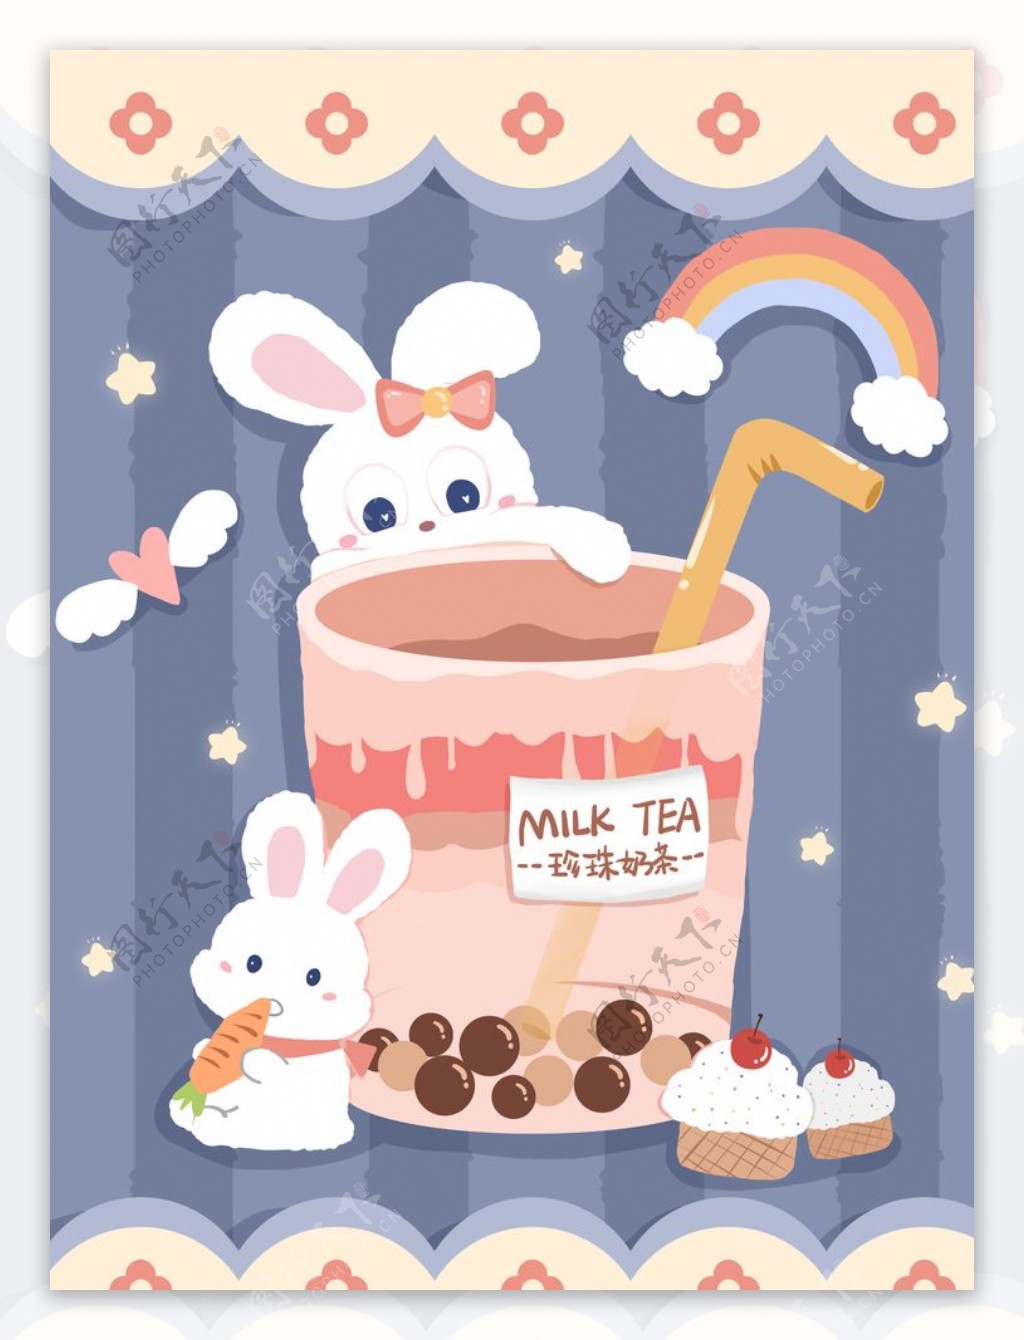 可爱奶茶插画图片